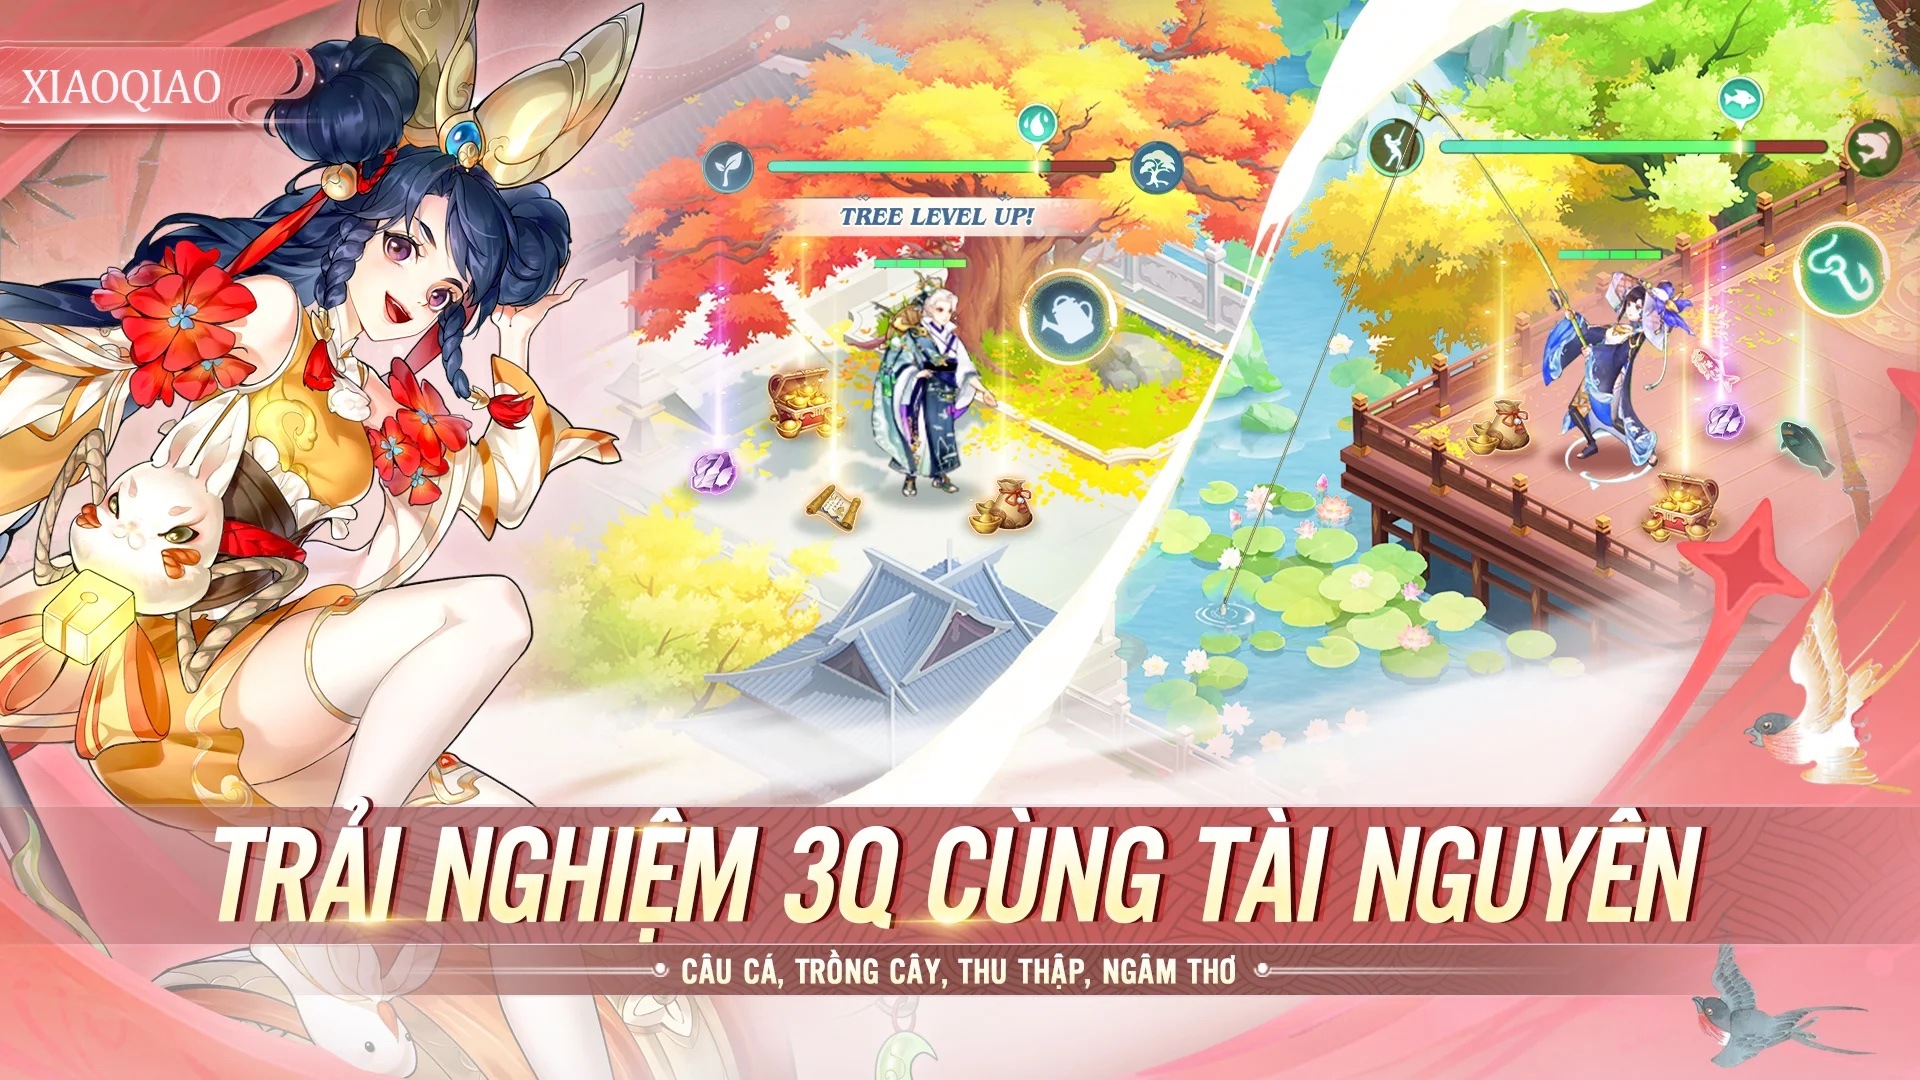 Tân 3Q Truyền Kỳ: Thêm một game mới đề tài nhập vai đấu tướng Tam Quốc